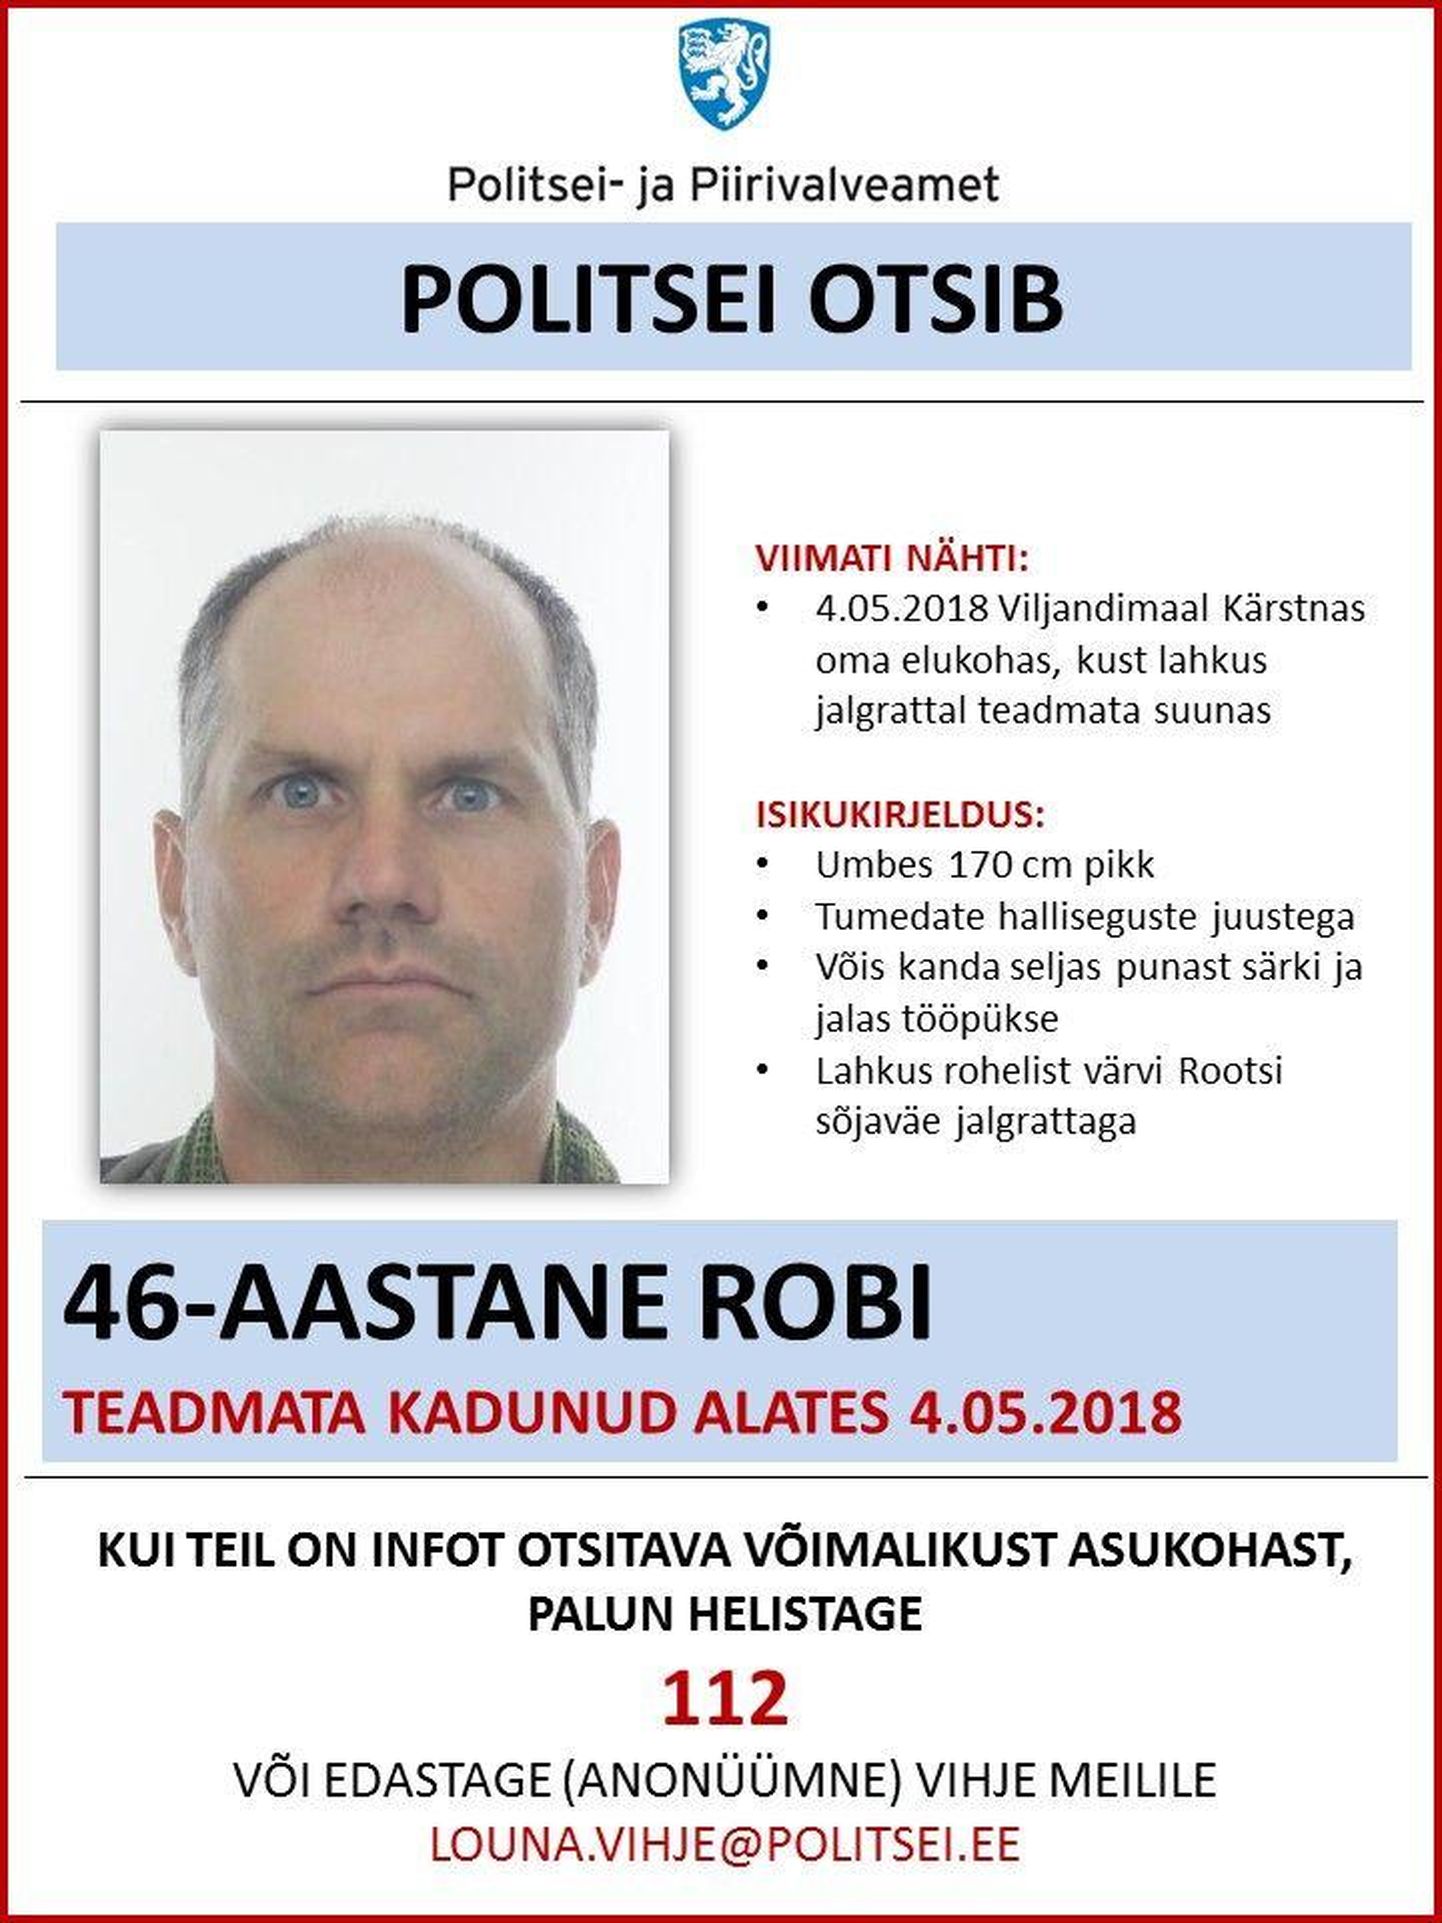 Politsei otsib taga 46-aastast Robi, keda viimati nähti mai alguses.